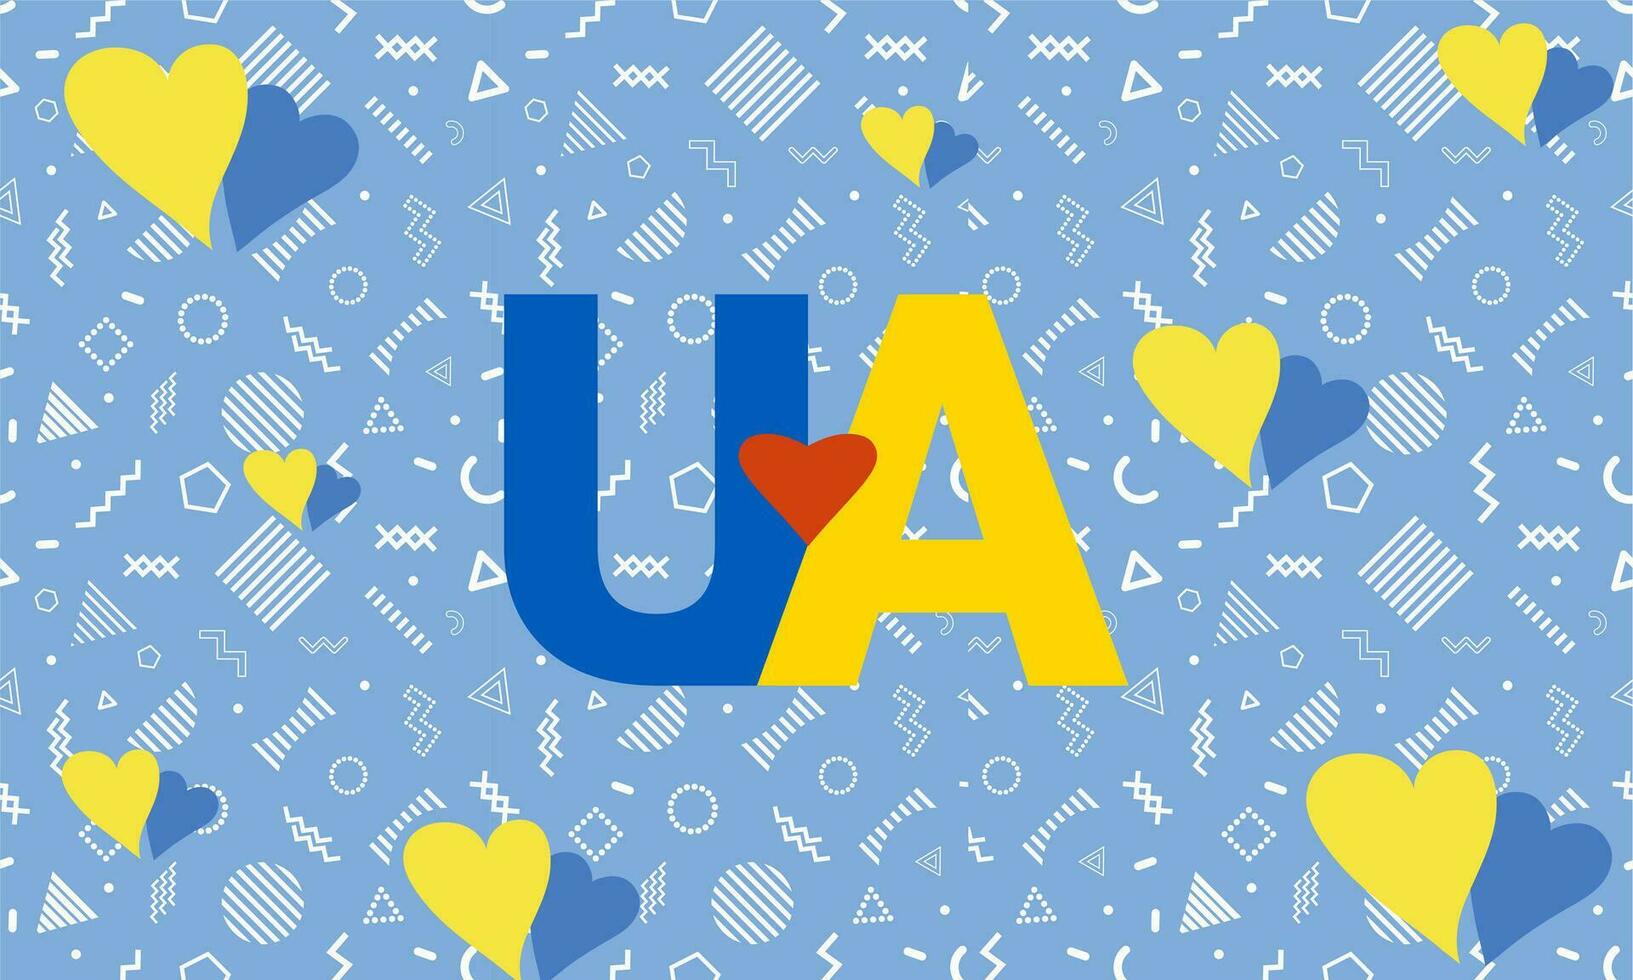 Ukraine indépendance journée avec abstrait moderne conception. drapeau et carte de Ukraine avec typographie bleu et Jaune Couleur thème. Ukraine nationale journée bannière. vecteur